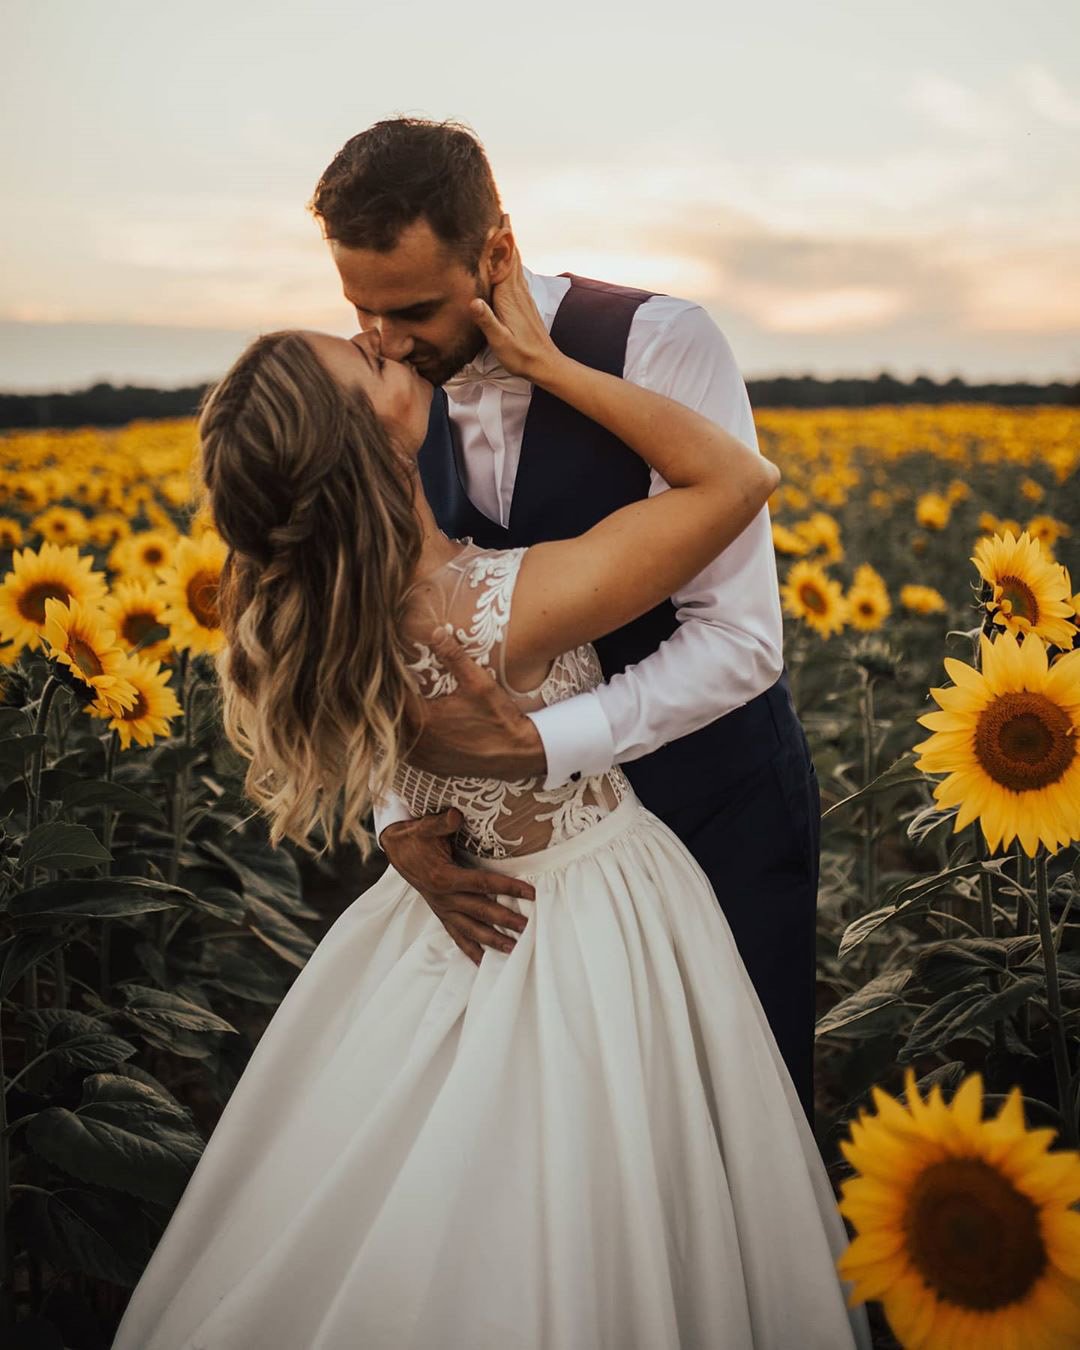 micro wedding venues groom and bride on sunflower field janasnuderl